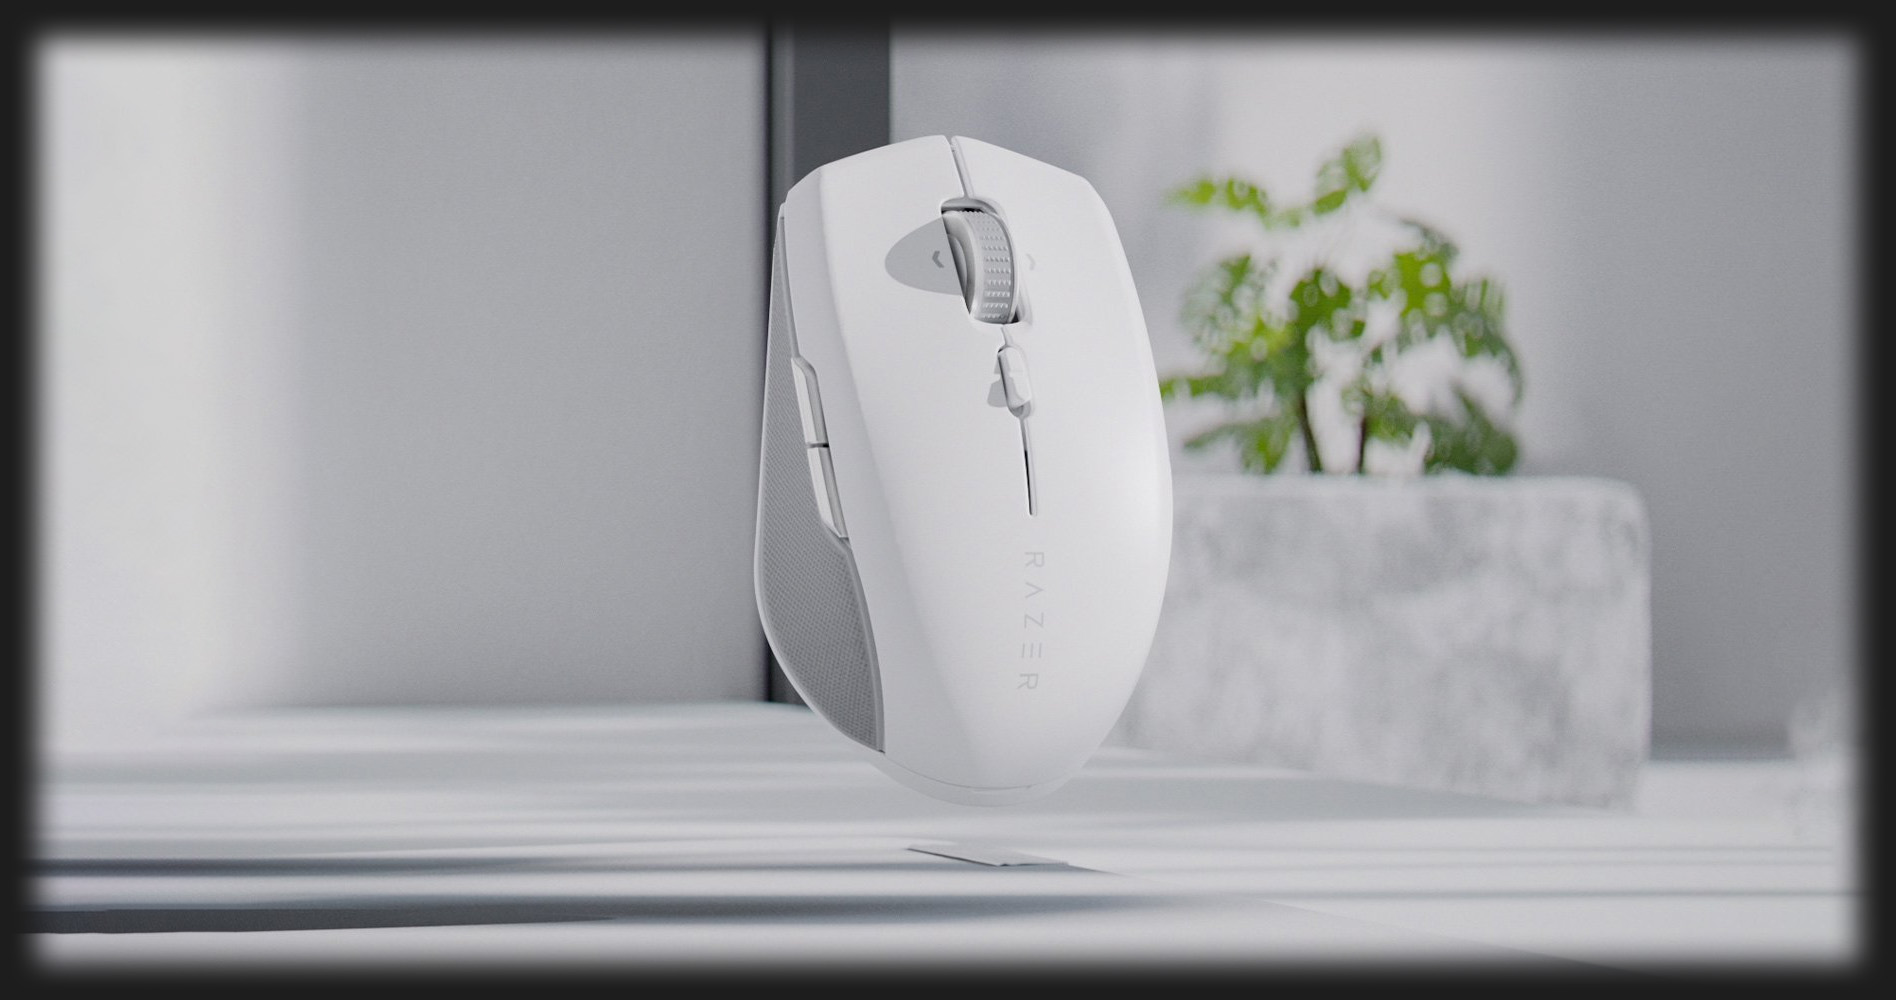 Ігрова миша Razer Pro Click (White)